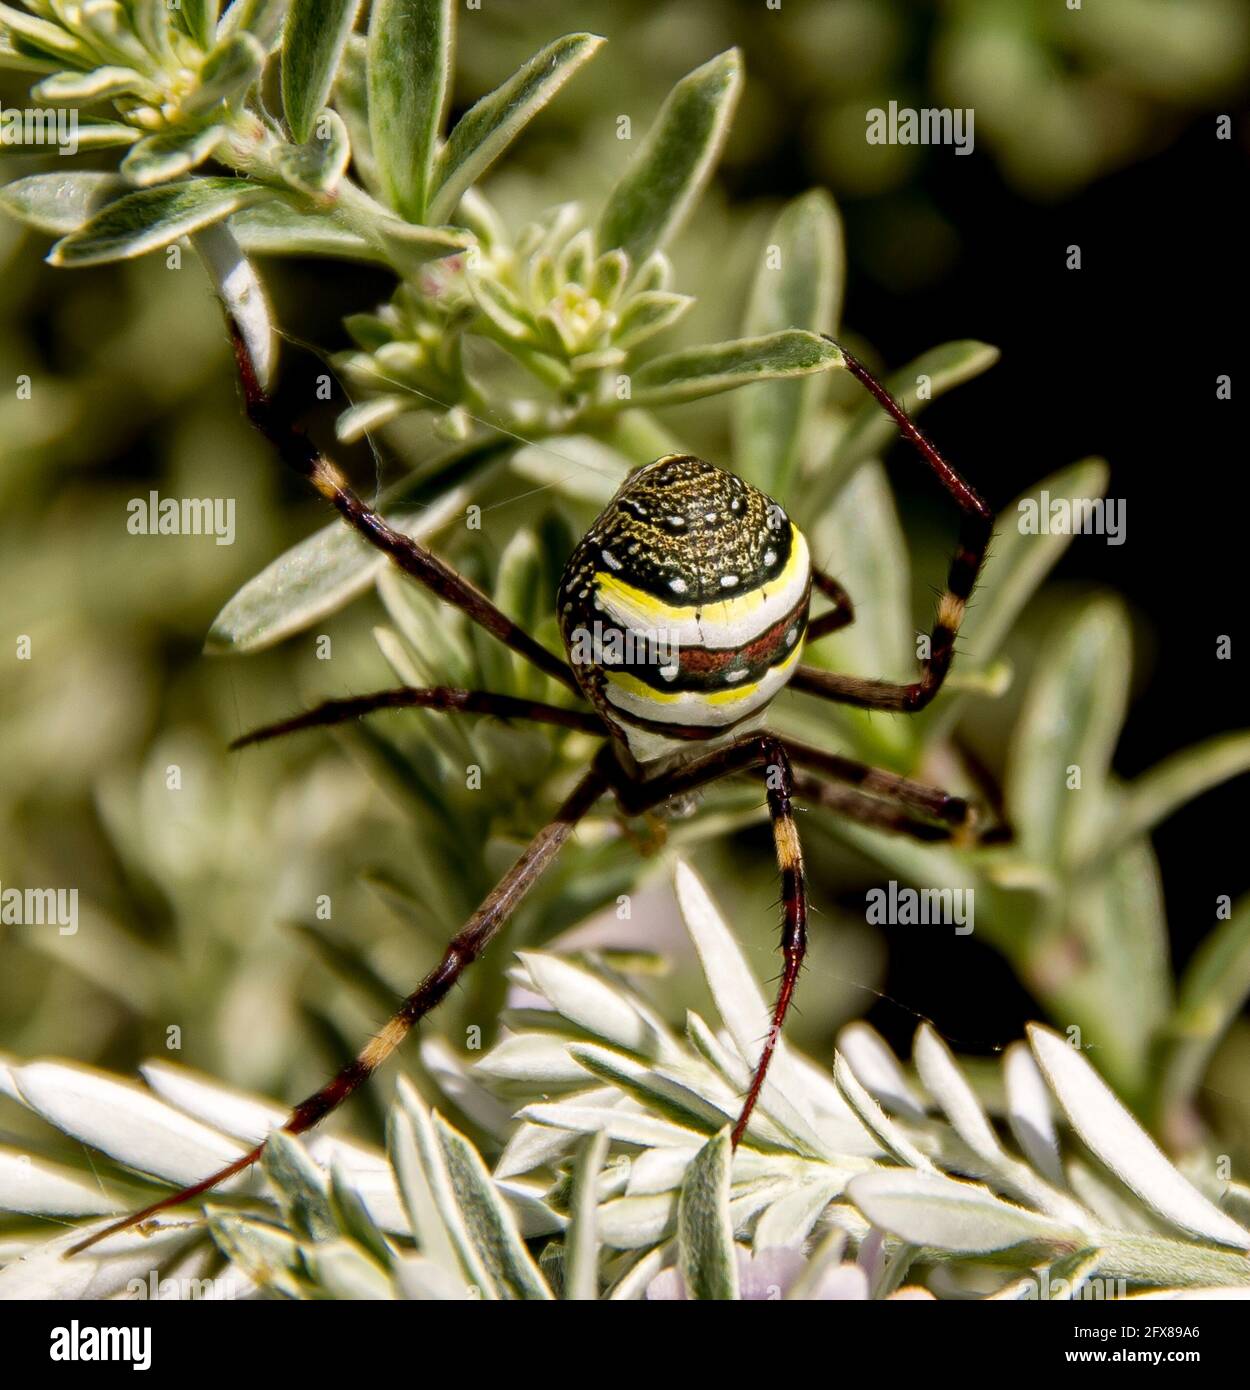 Femmina St Andrews Cross Spider (Argiope keyserlingi) iniziando a fare la sua rete in verde fogliame. Modelli distinti. Giardino a Queensland, A.ustralia. Foto Stock